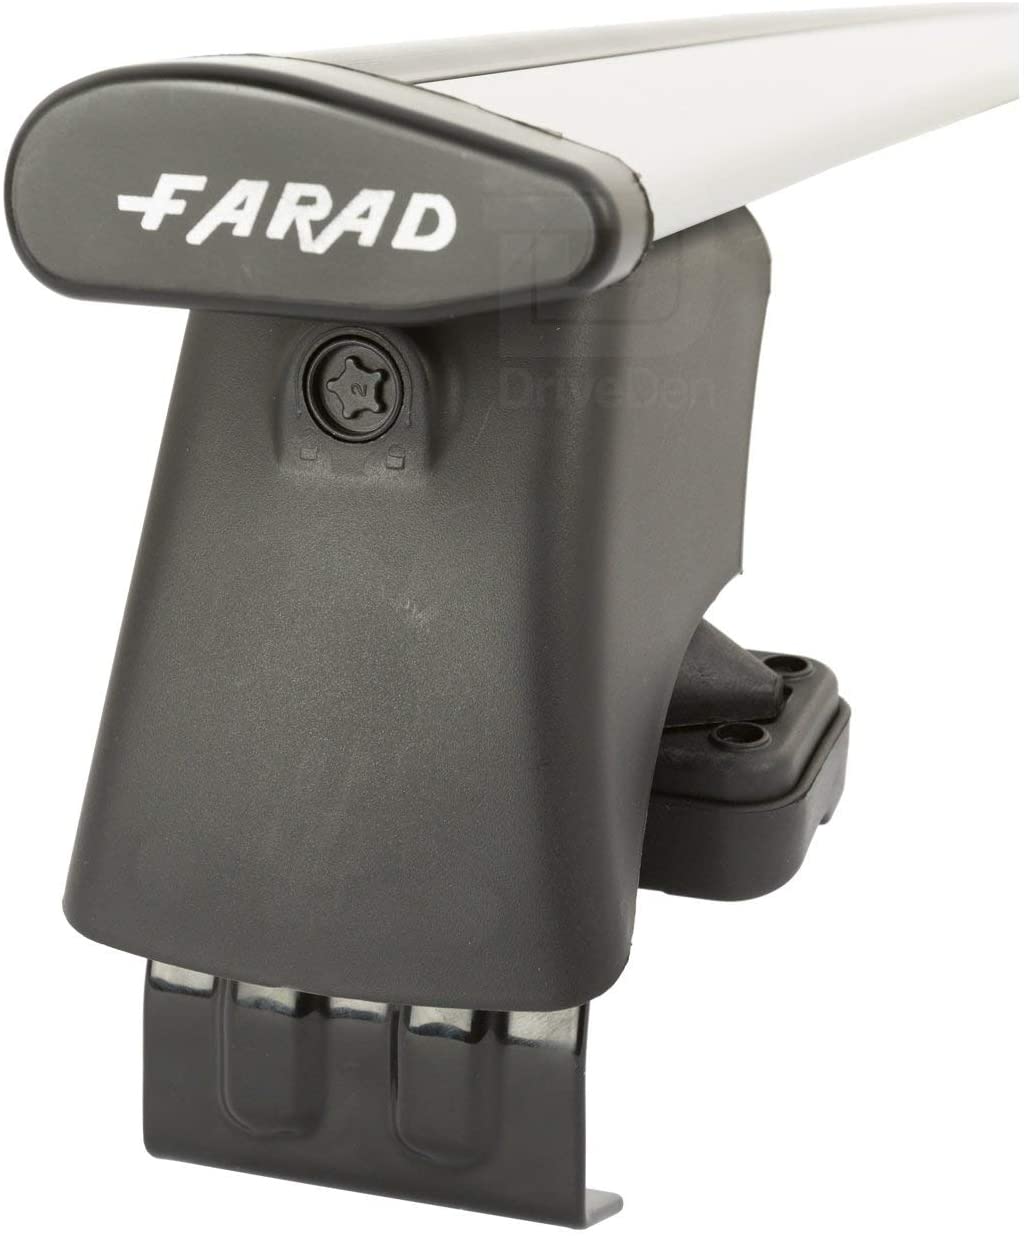 FARAD-Kit H2 per barre portatutto - Honda Jazz 2002-2008 (senza corrimano)